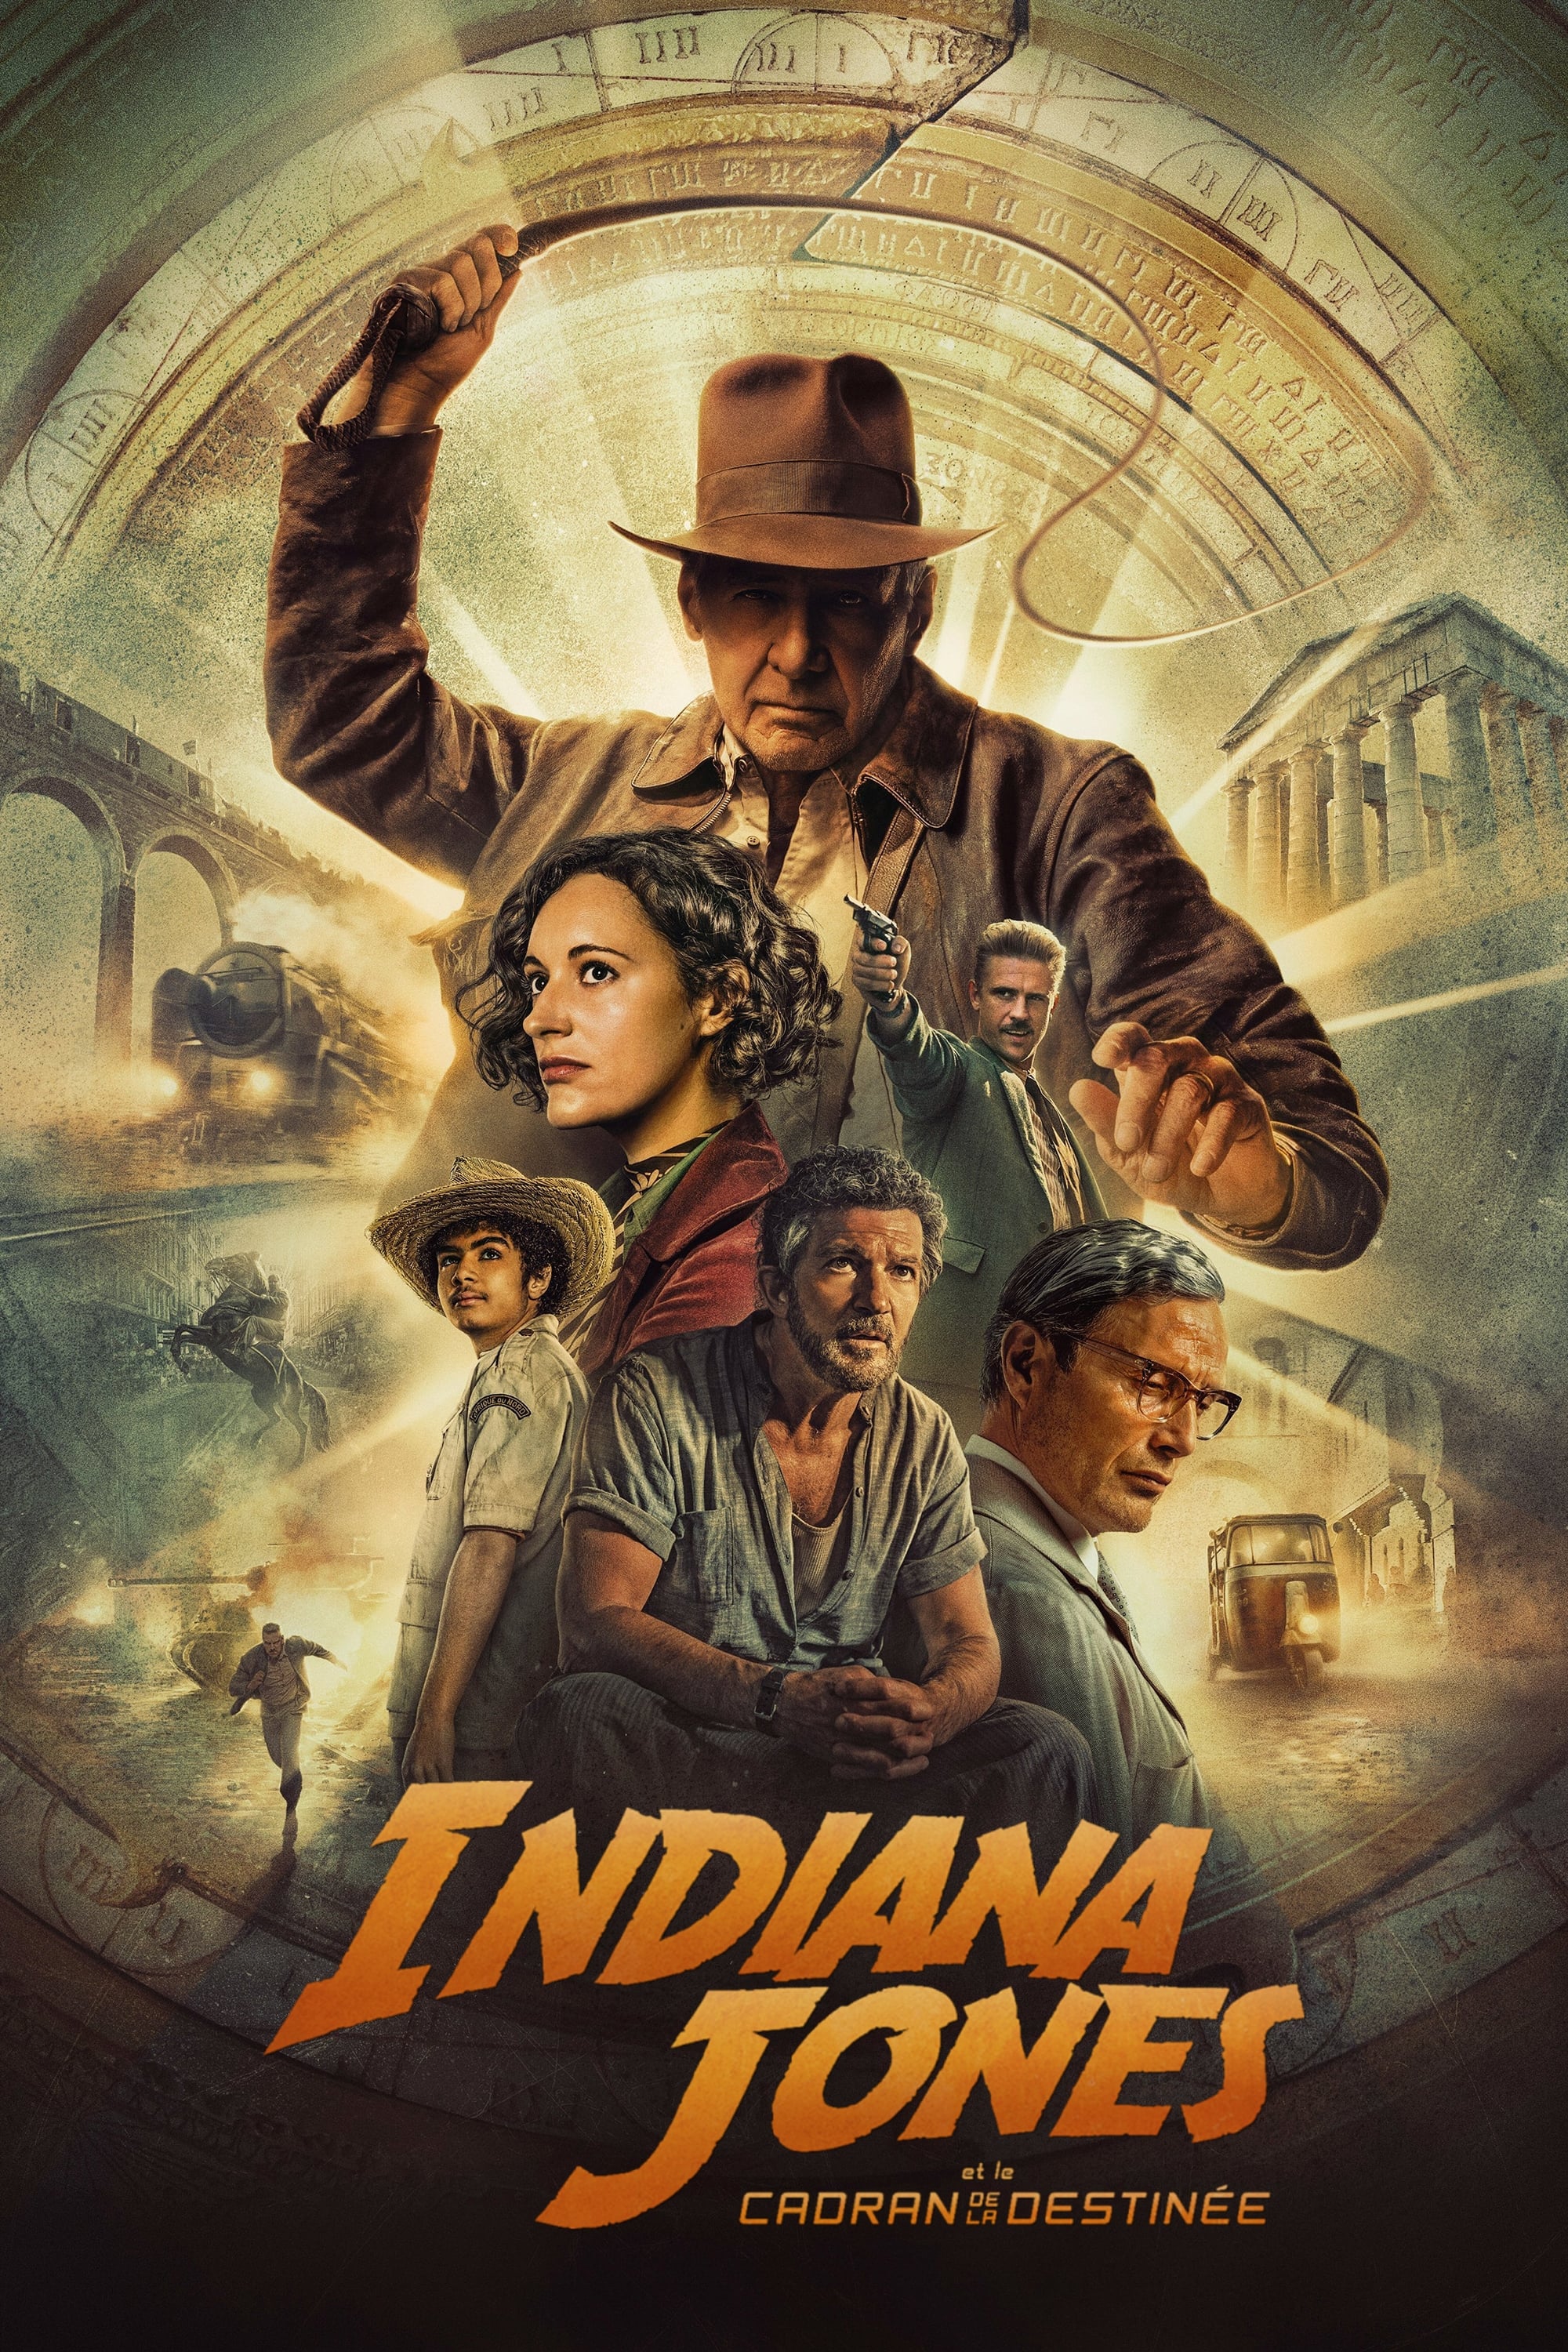 Affiche du film "Indiana Jones et le Cadran de la Destinée"